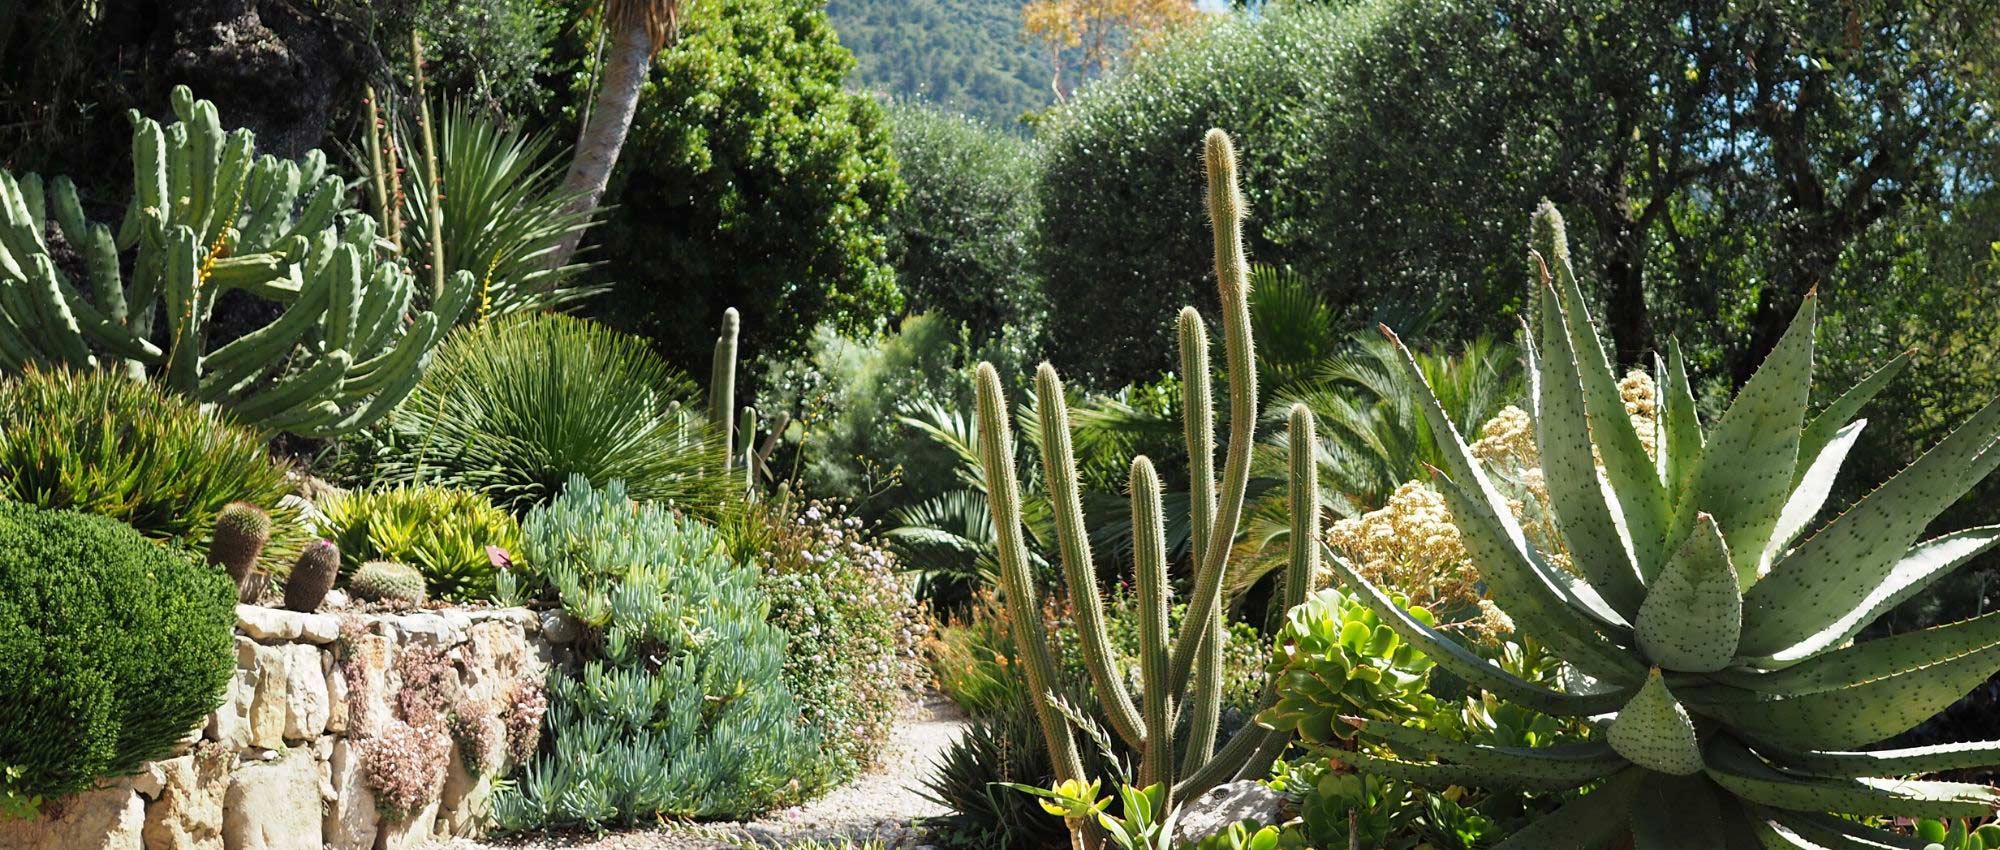 terreau cactus et plante grasse – Les Serres Michaud